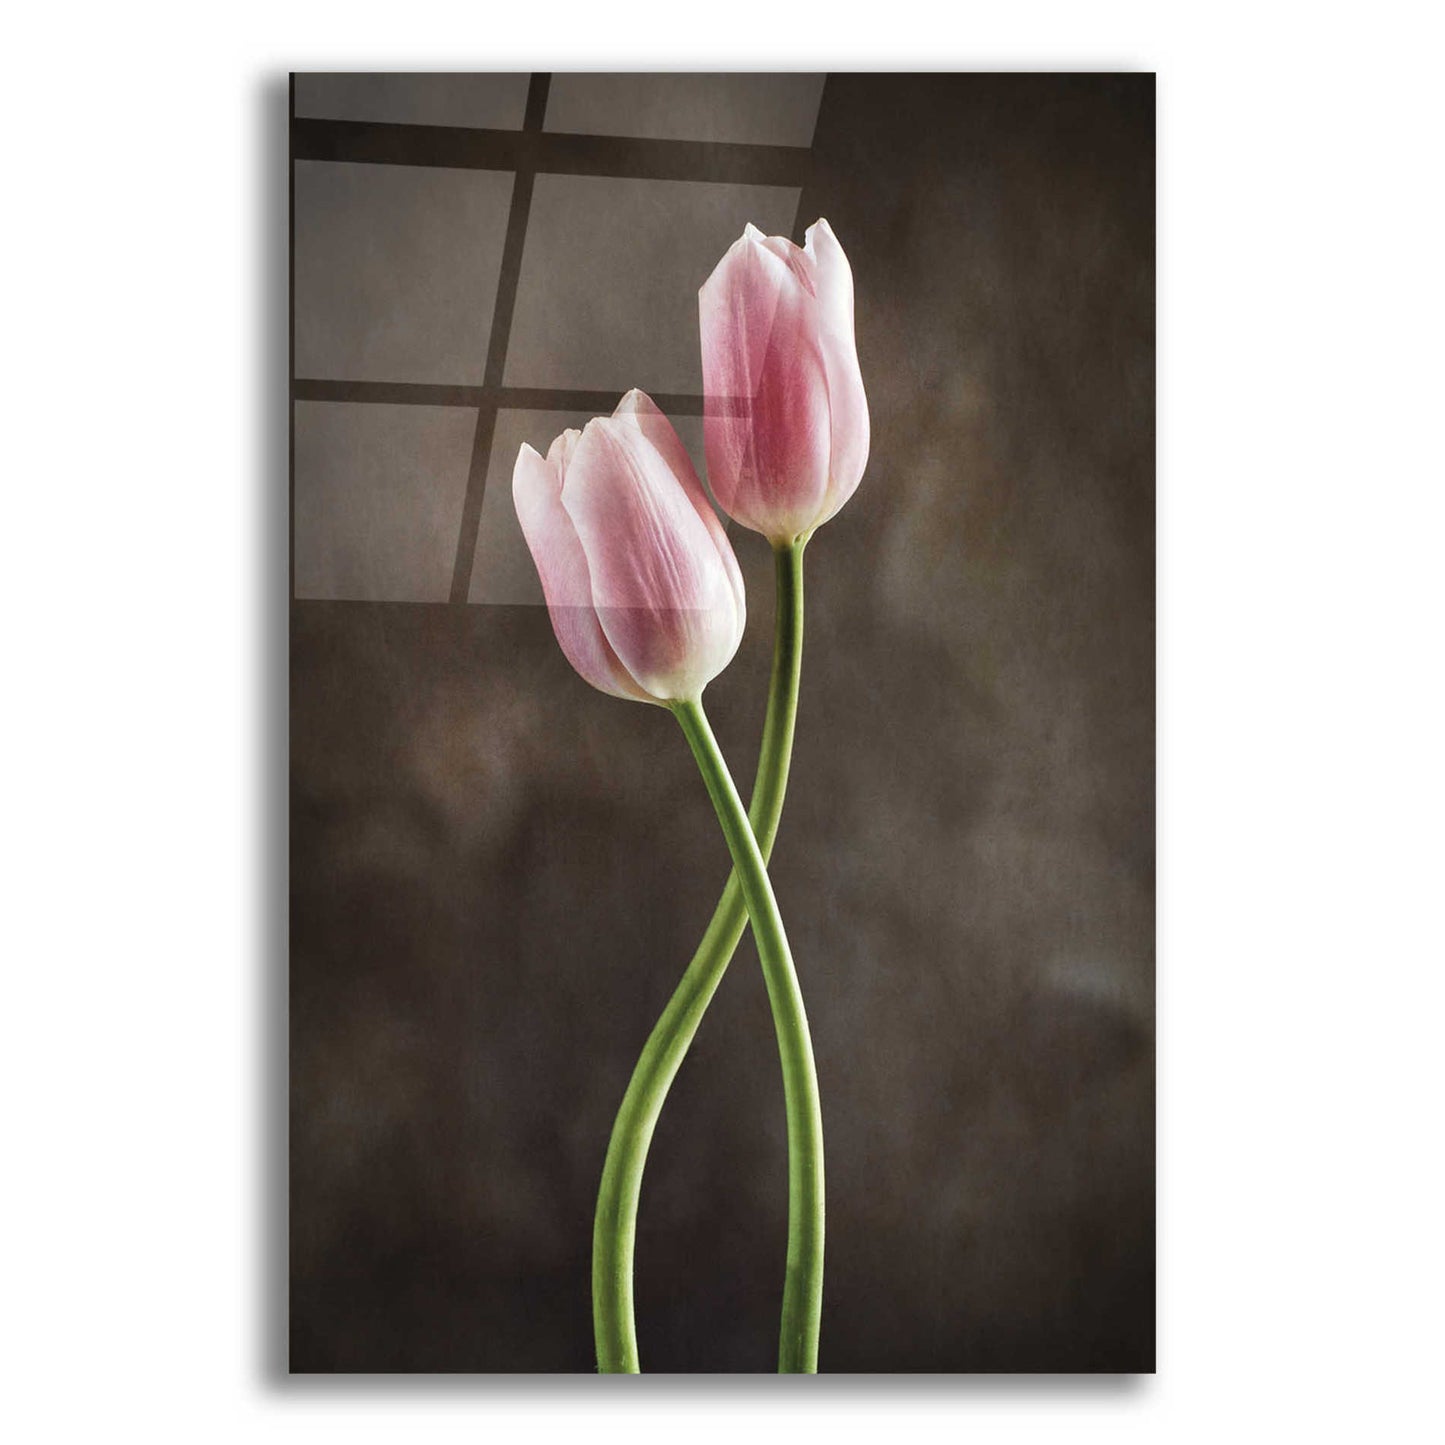 Epic Art 'Spring Tulips V' by Debra Van Swearingen, Acrylic Glass Wall Art,12x18x1.1x0,18x26x1.1x0,26x40x1.74x0,40x60x1.74x0